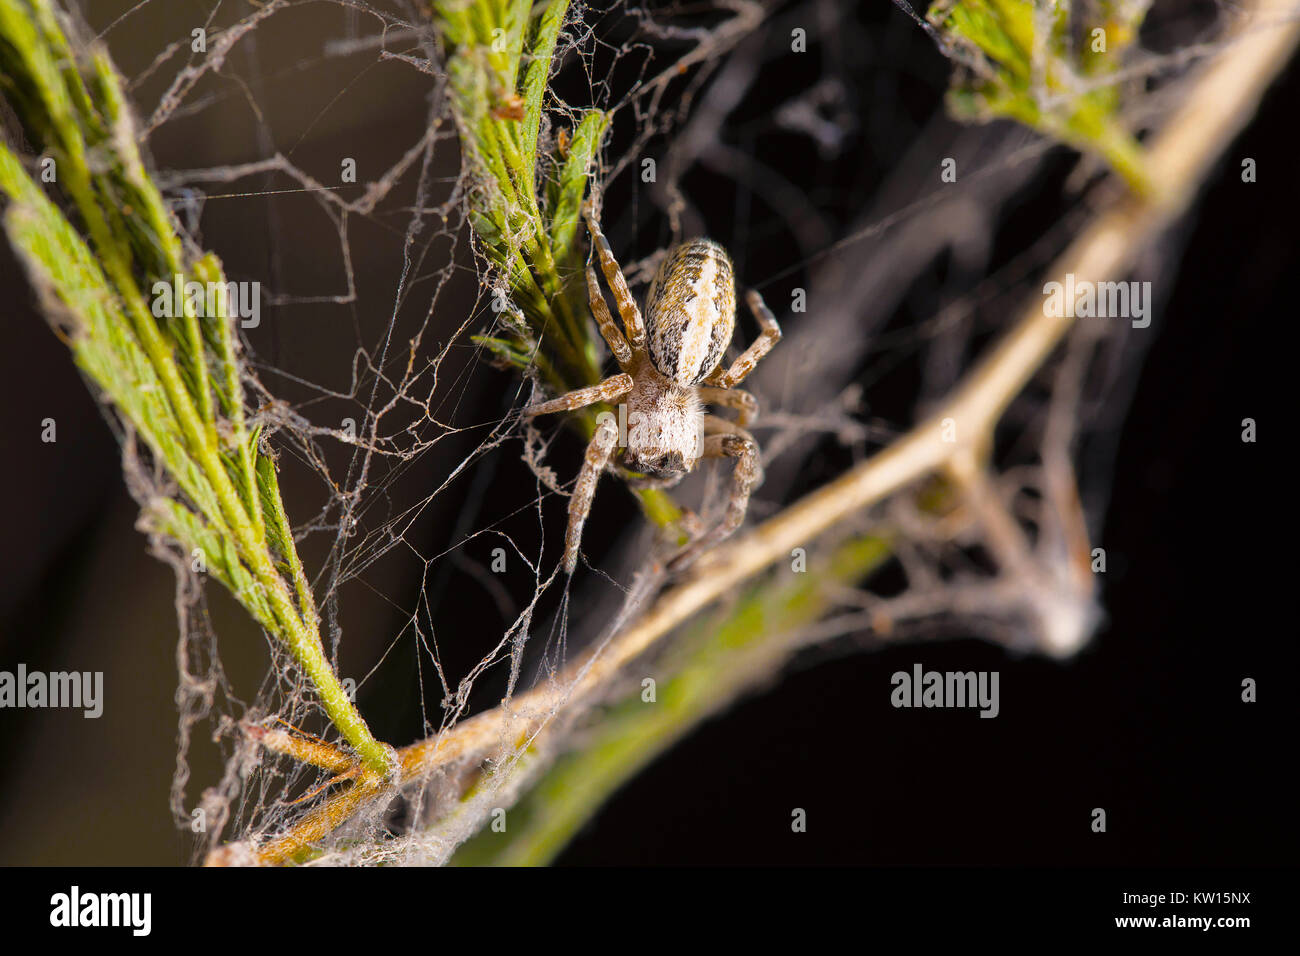 Soziale Spinne, Stegodyphus sarasinorum, Pondicherry, Tamil Nadu, Indien. Beschreibung: Es ist eine der wenigen sozialen Spinnen der Welt. Bekannt für seine s Stockfoto